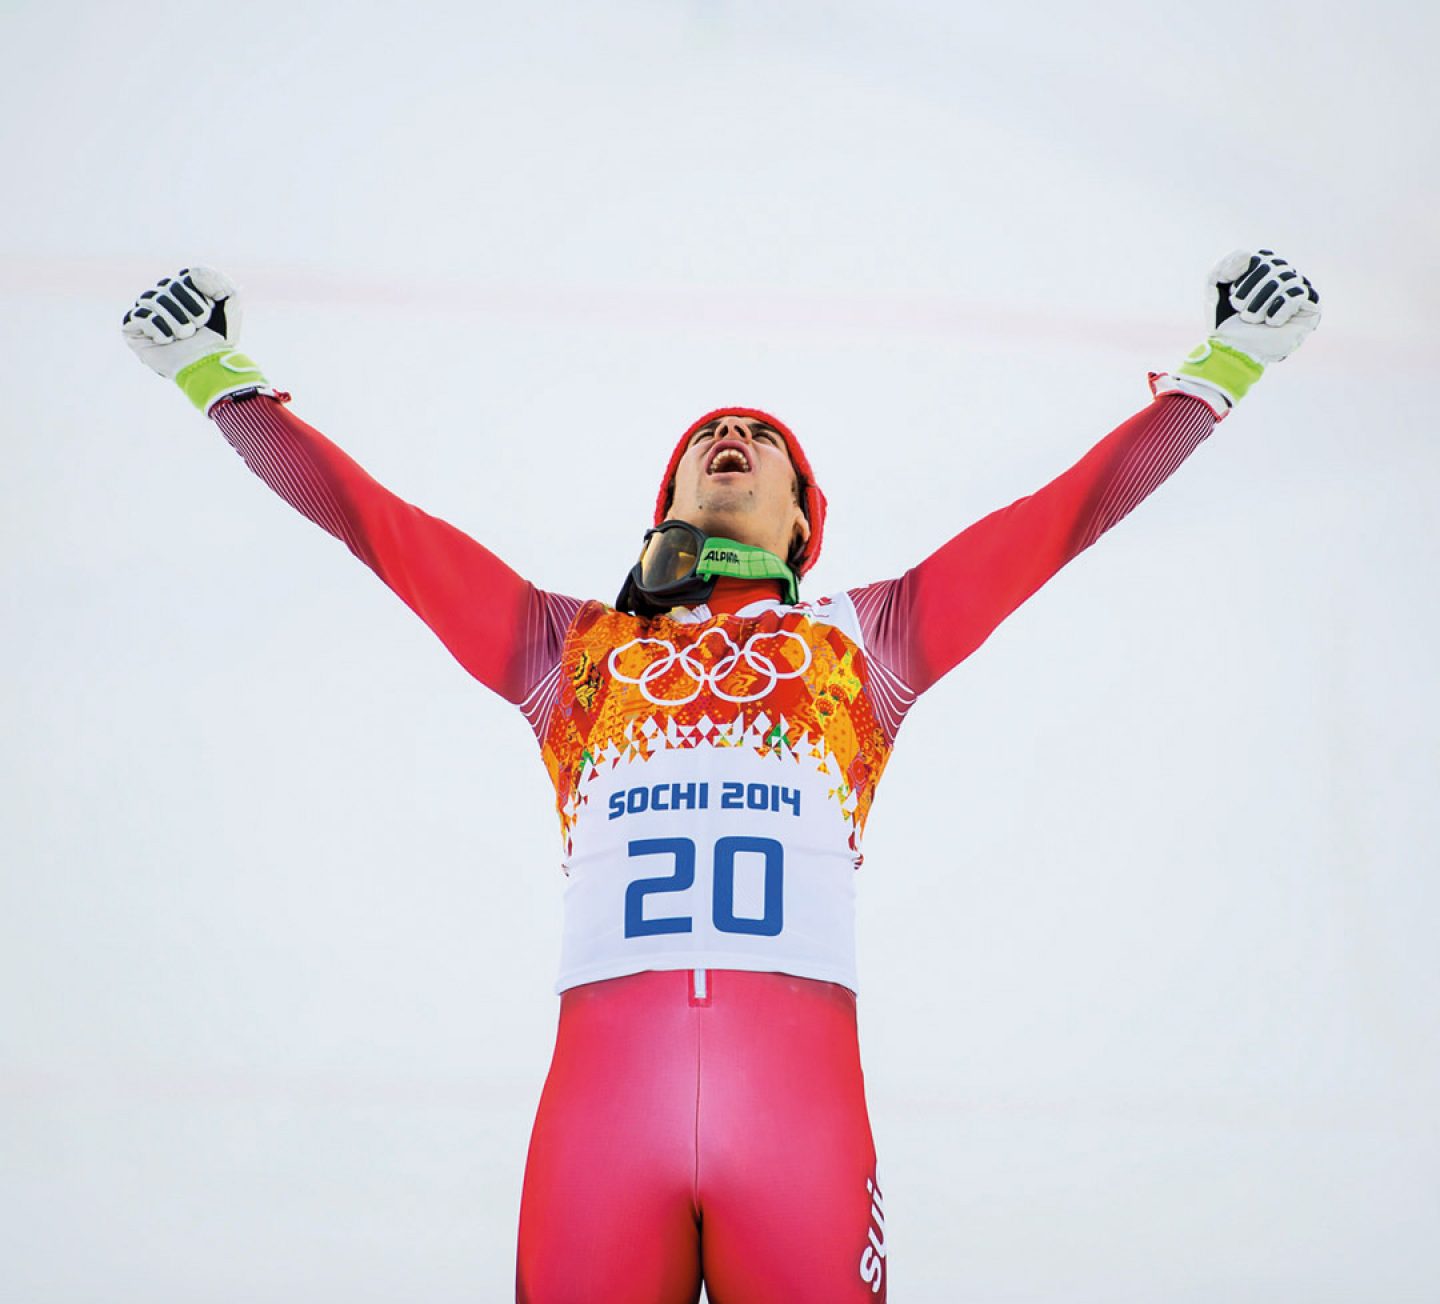 Il suo maggior successo da giovane è stata la medaglia di bronzo nello slalom in occasione dei Campionati mondiali juniores del 2006 nel Québec.